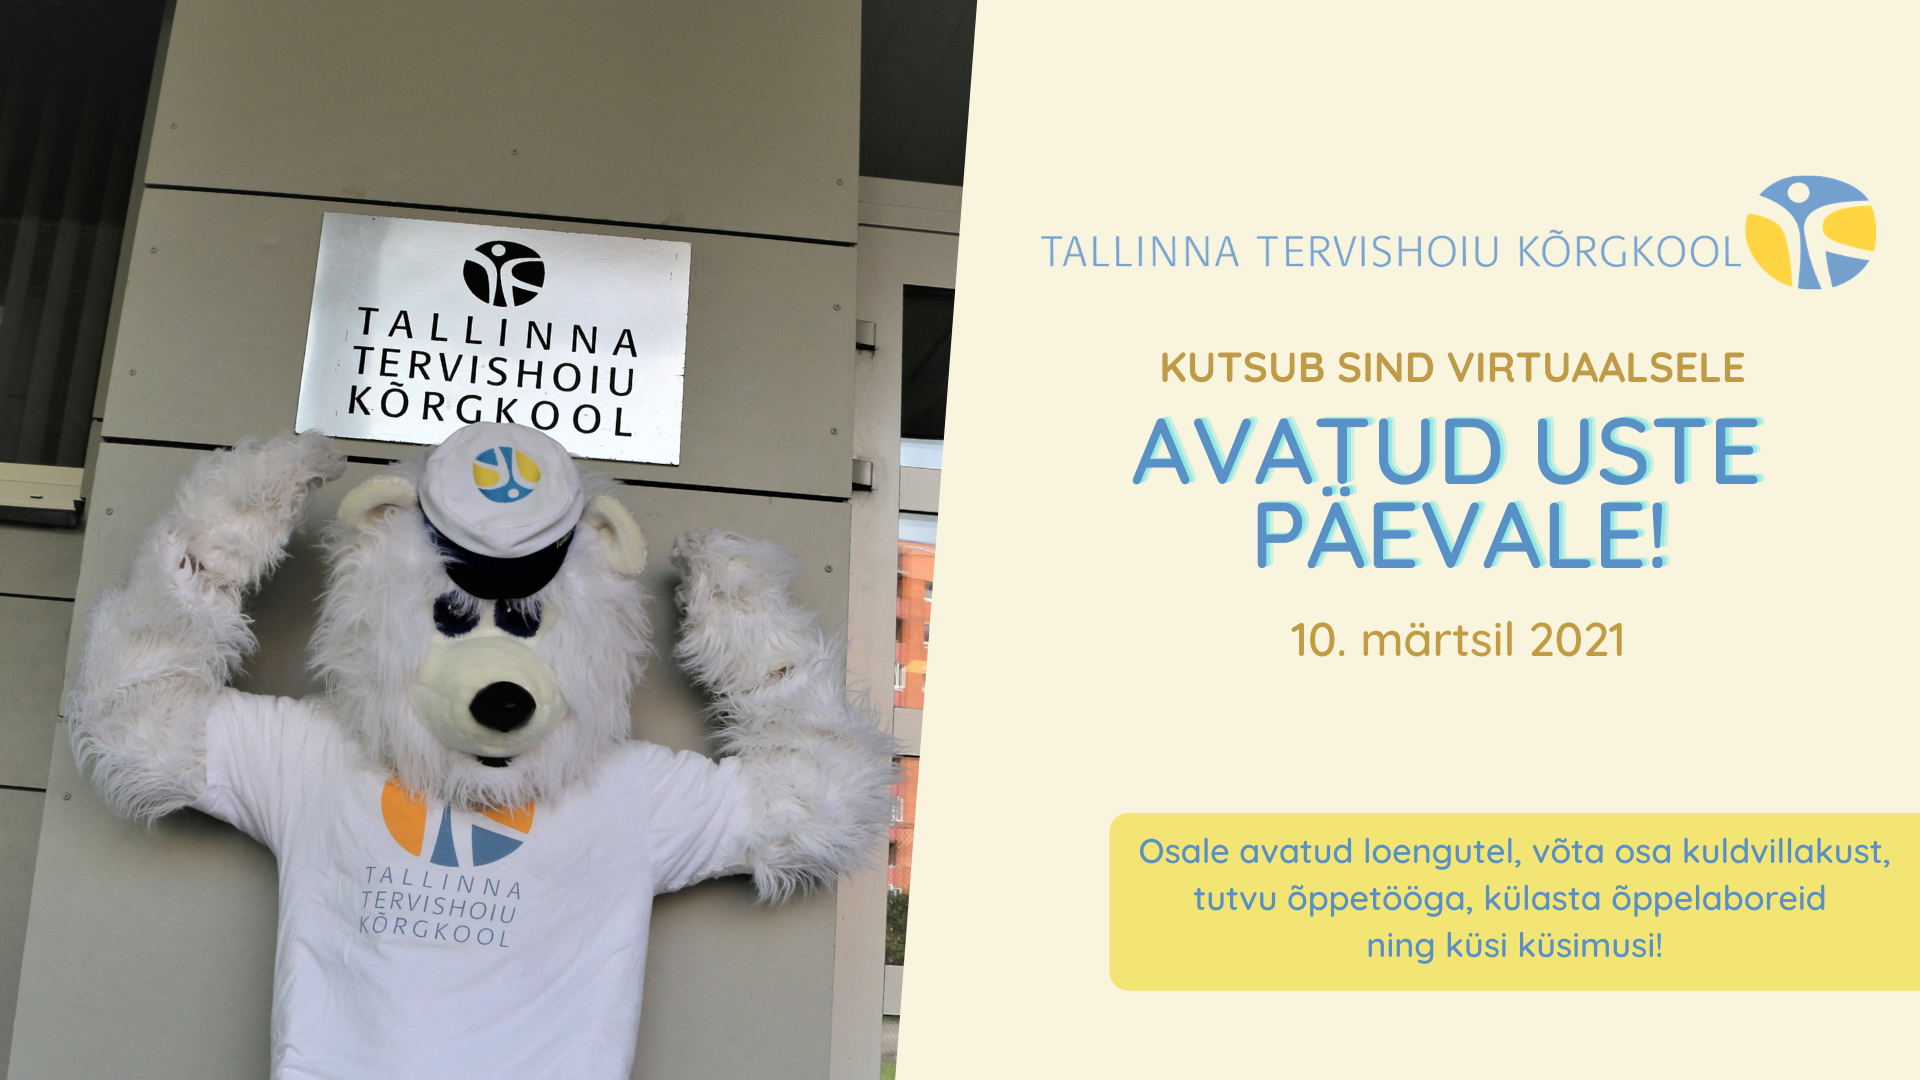 Tallinna Tervishoiu Kõrgkooli avatud uste päev toimub virtuaalselt 10. märtsil!